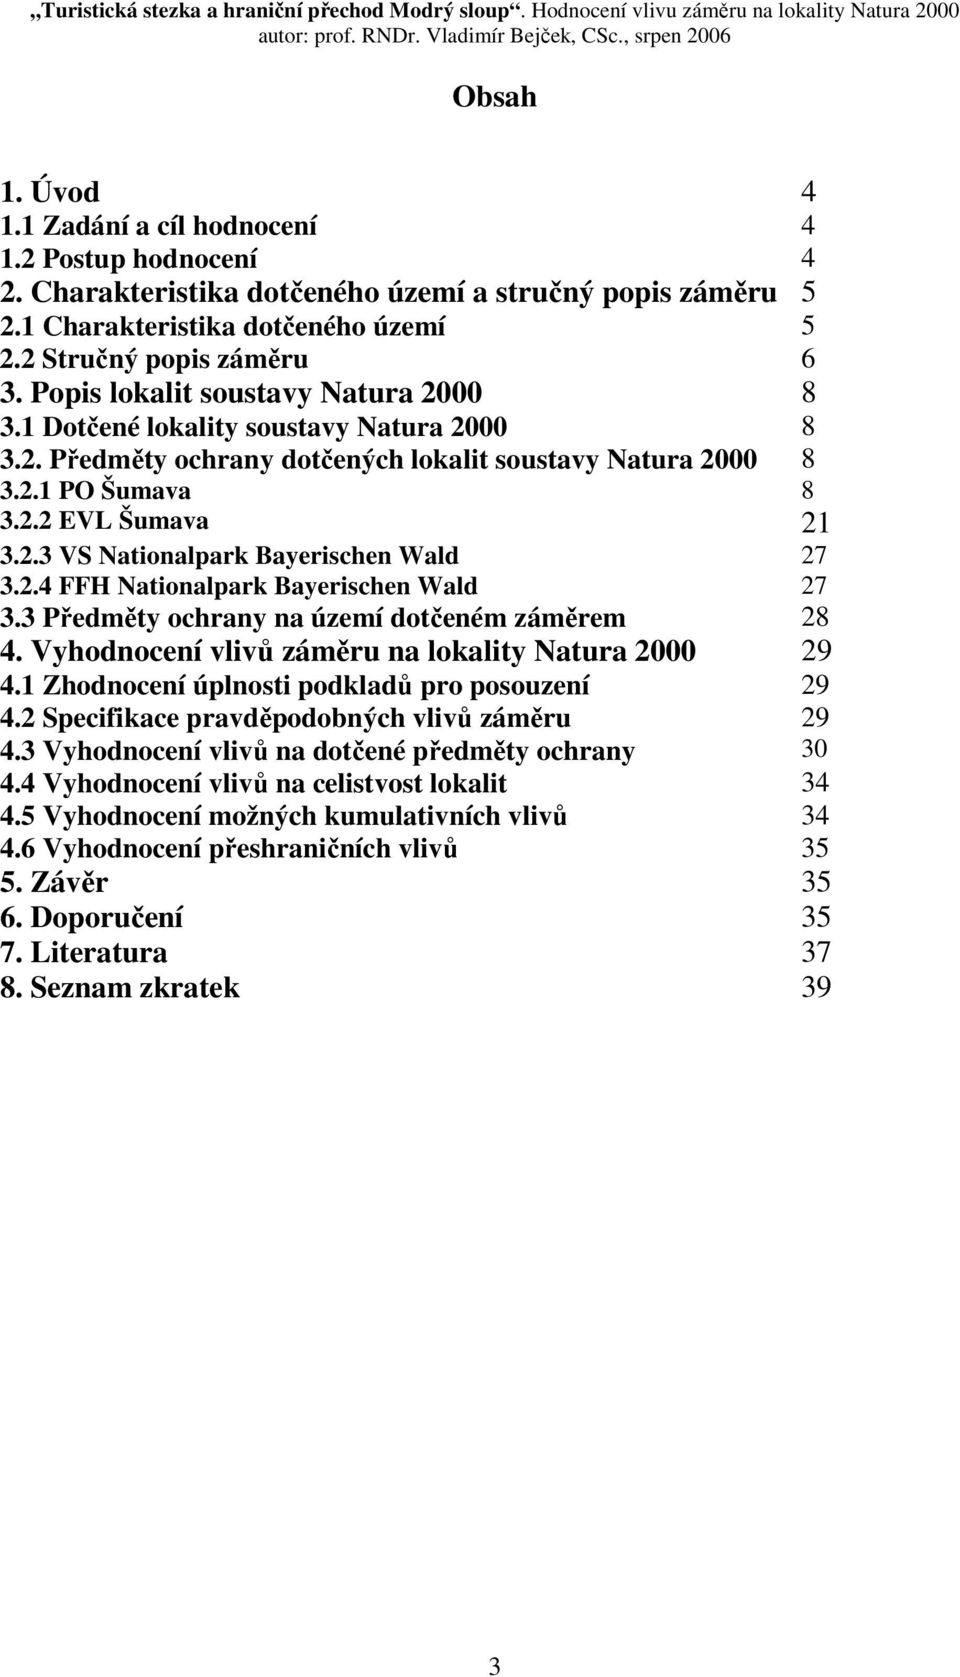 2.4 FFH Nationalpark Bayerischen Wald 27 3.3 Předměty ochrany na území dotčeném záměrem 28 4. Vyhodnocení vlivů záměru na lokality Natura 2000 29 4.1 Zhodnocení úplnosti podkladů pro posouzení 29 4.